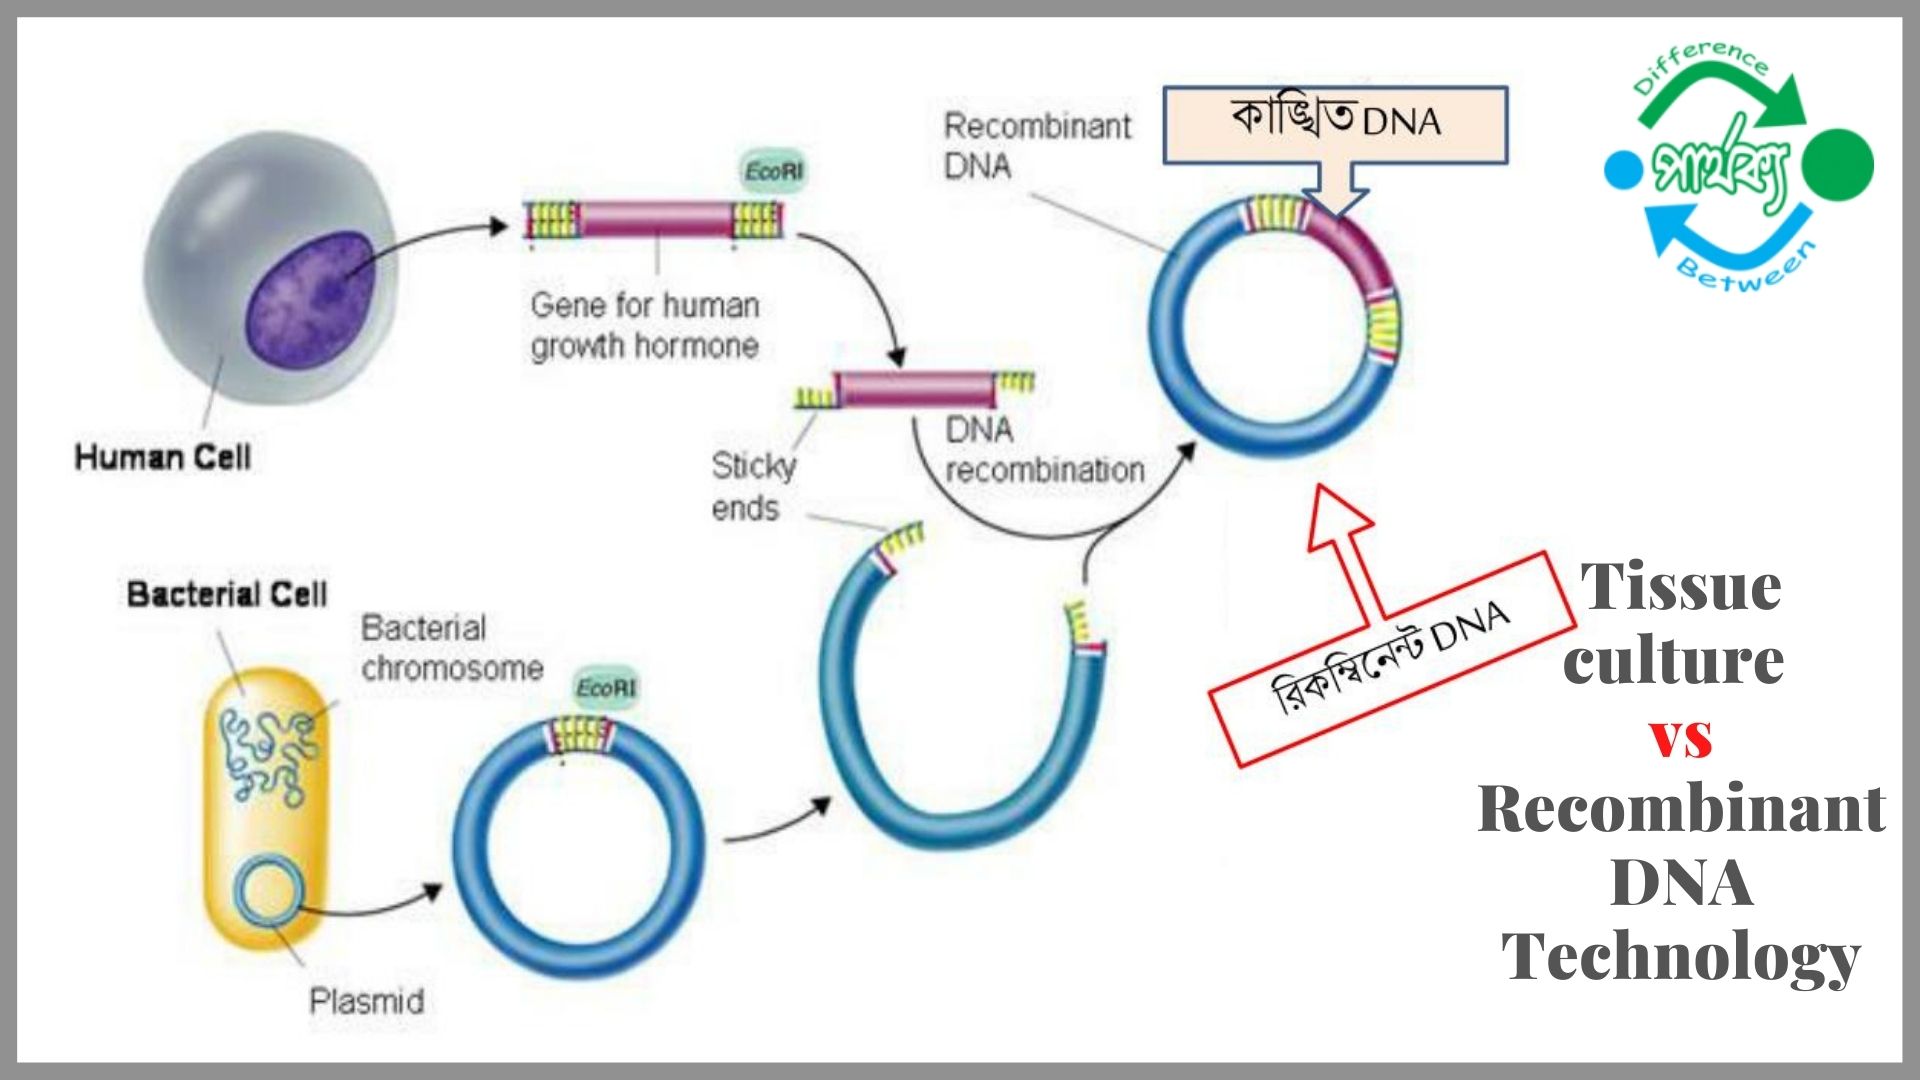 টিস্যু কালচার এবং রিকম্বিনেন্ট DNA প্রযুক্তির মধ্যে পার্থক্য